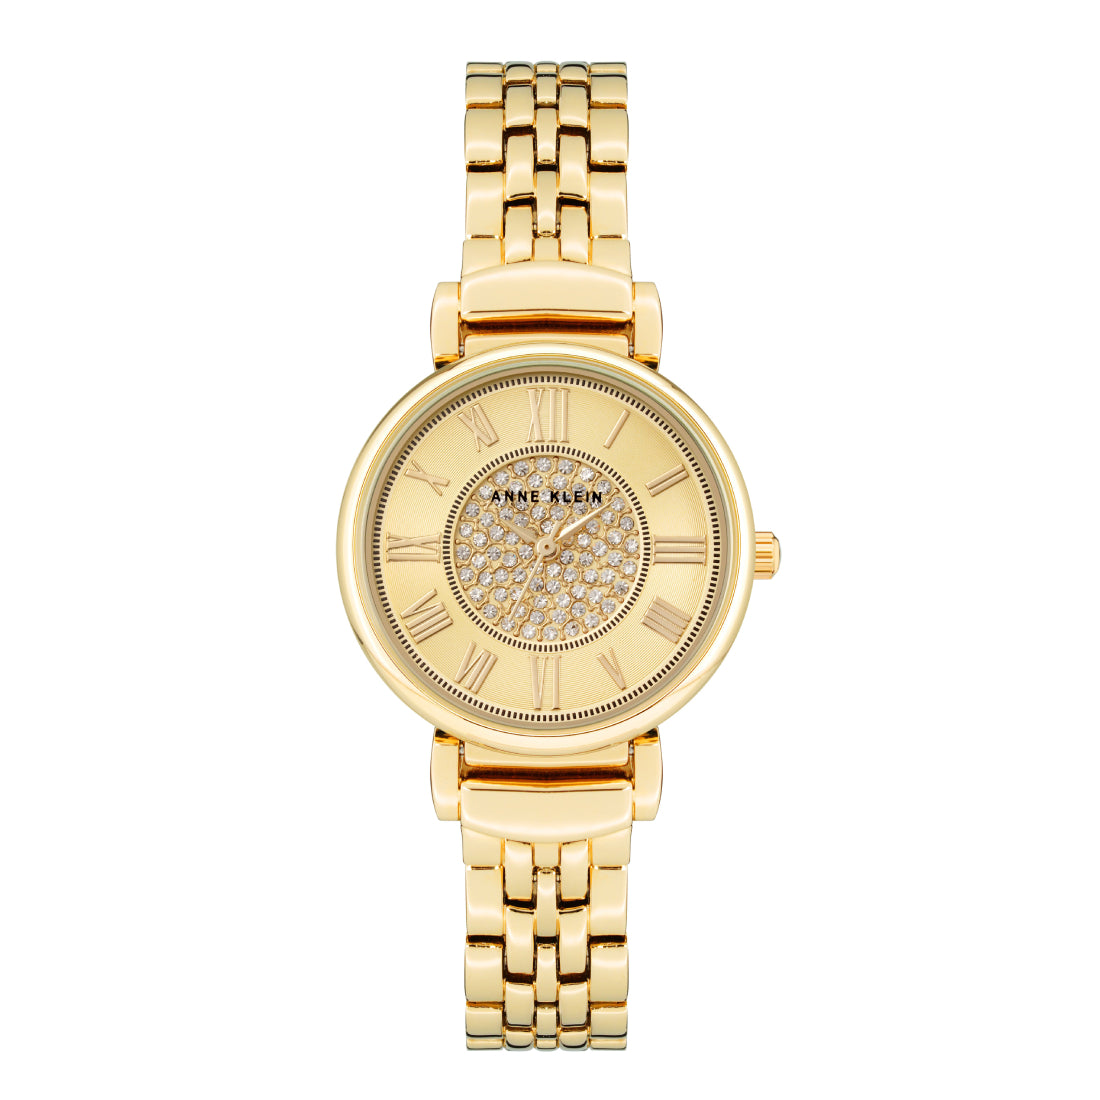 Anne Klein Women's Quartz Watch With Gold Dial - AK-0260